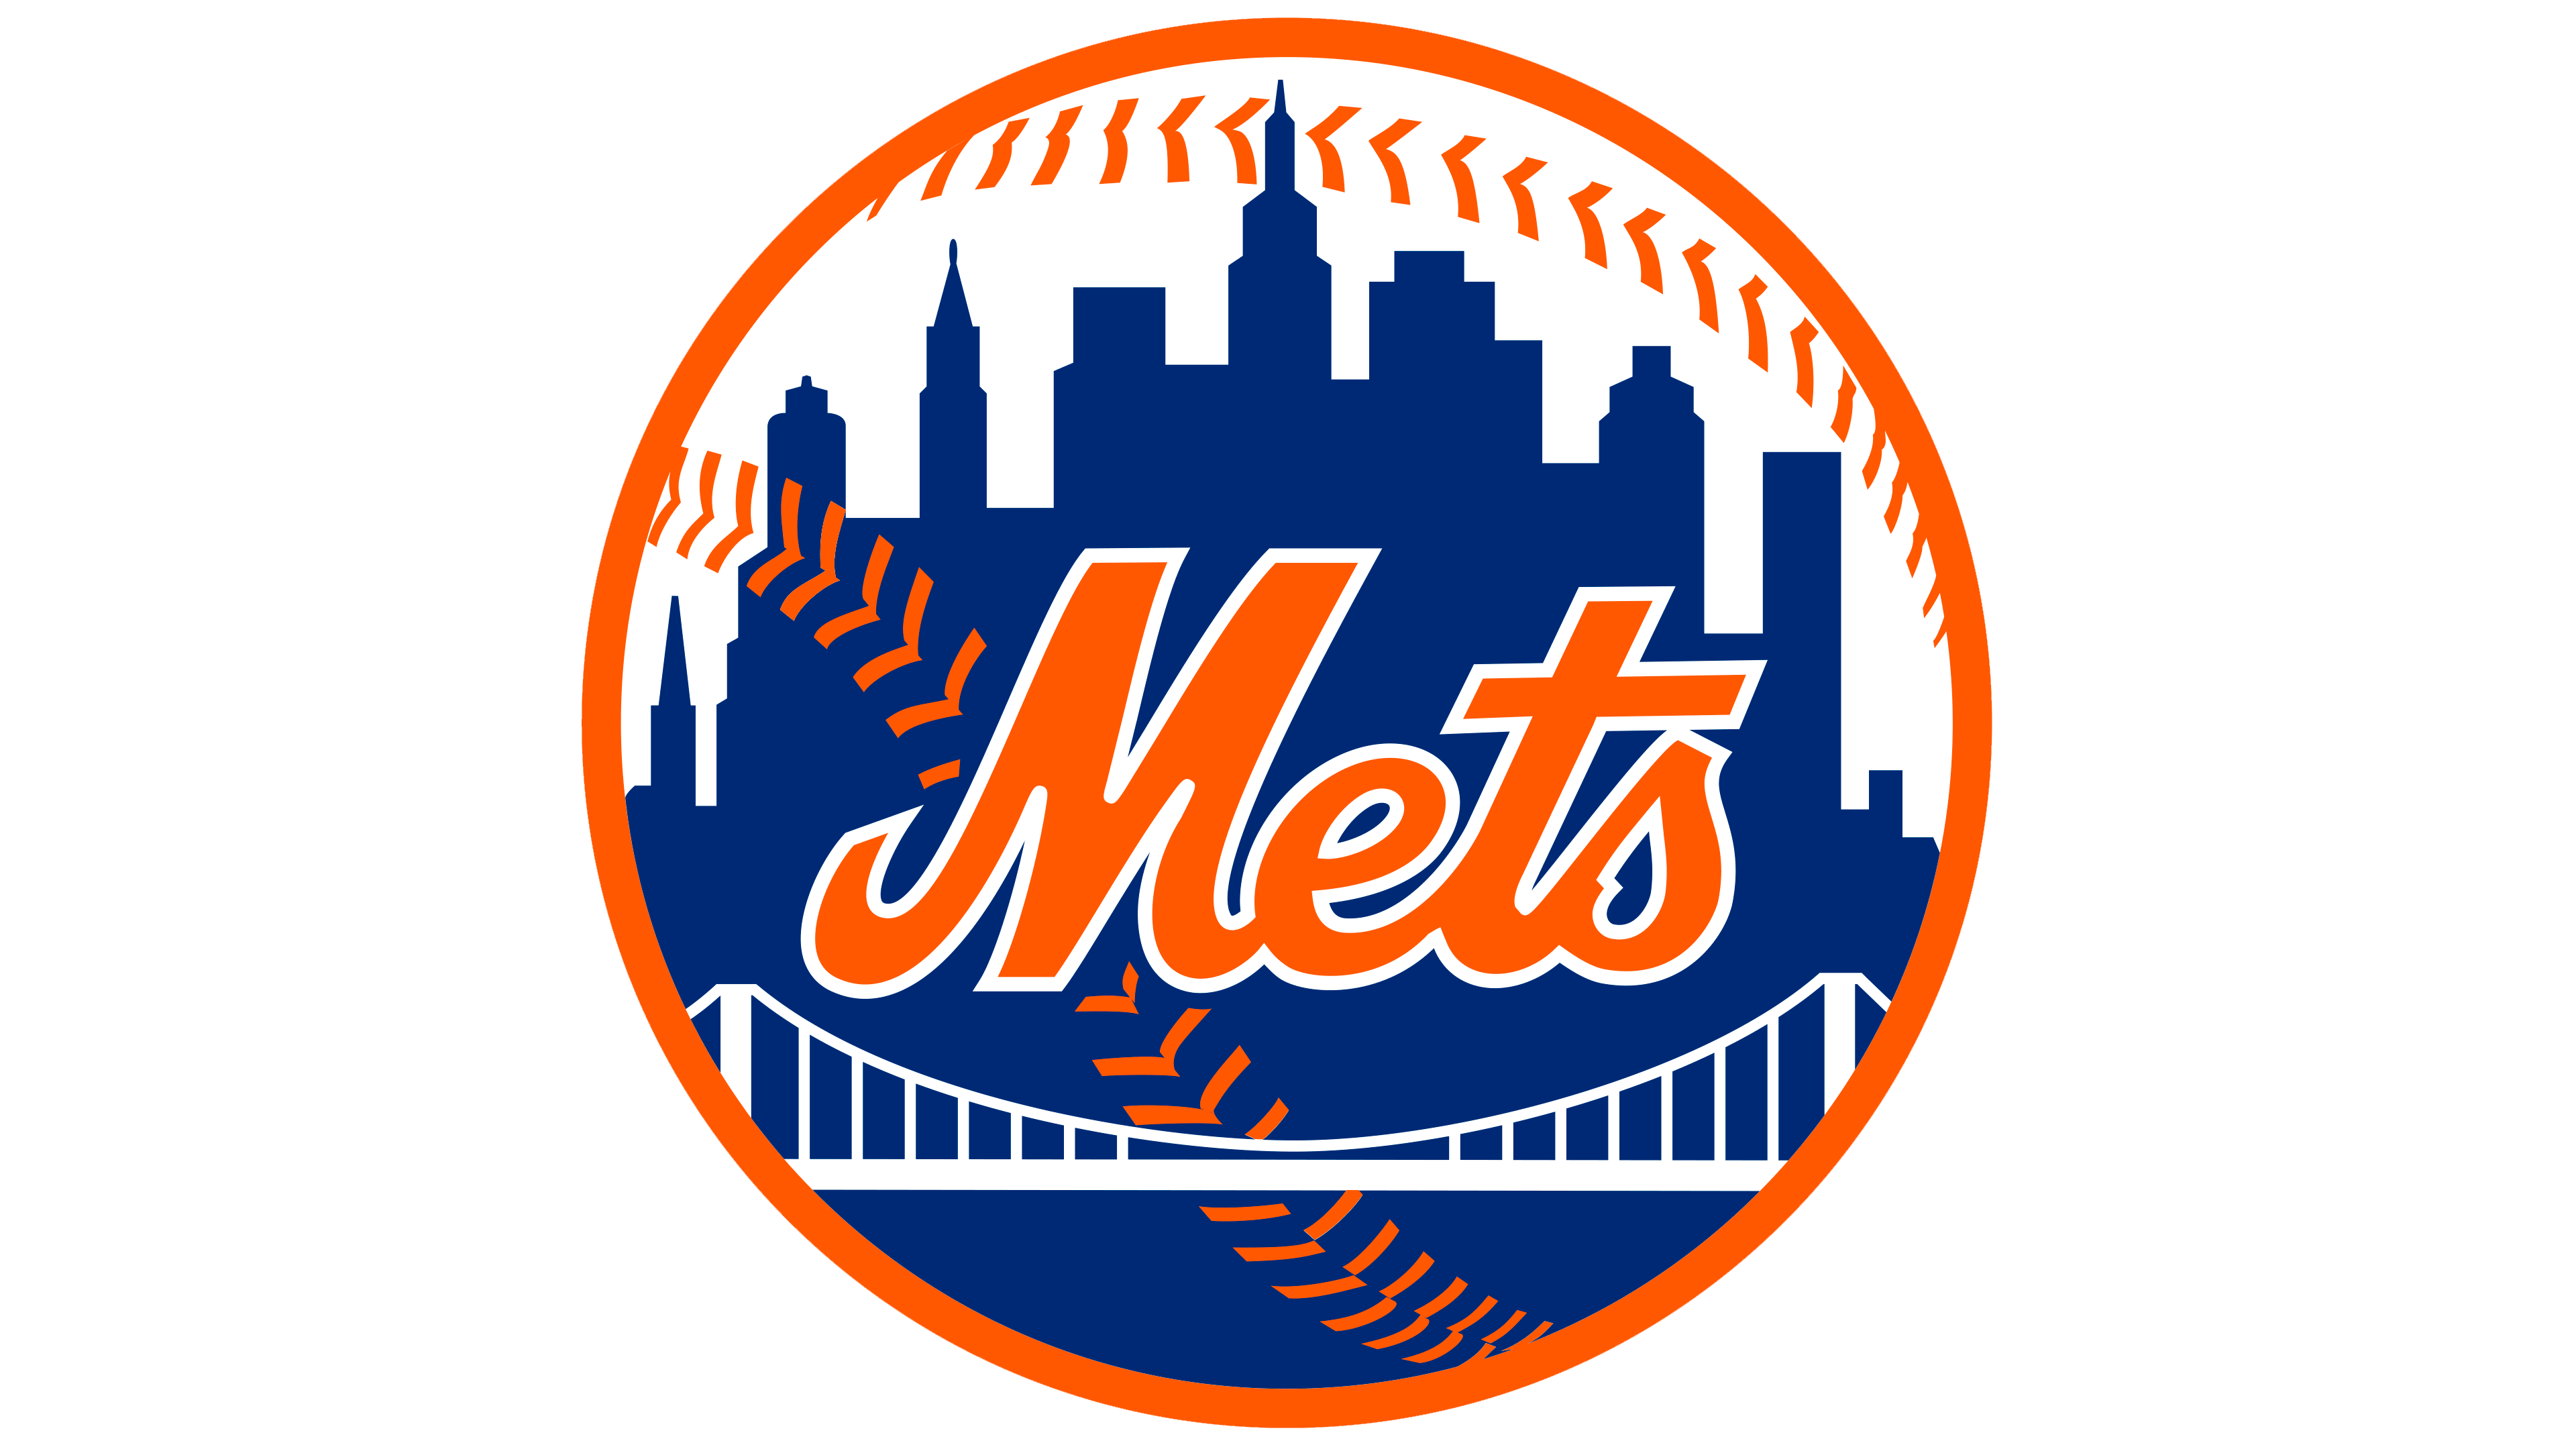 New York Mets Logo - LOGOS de MARCAS